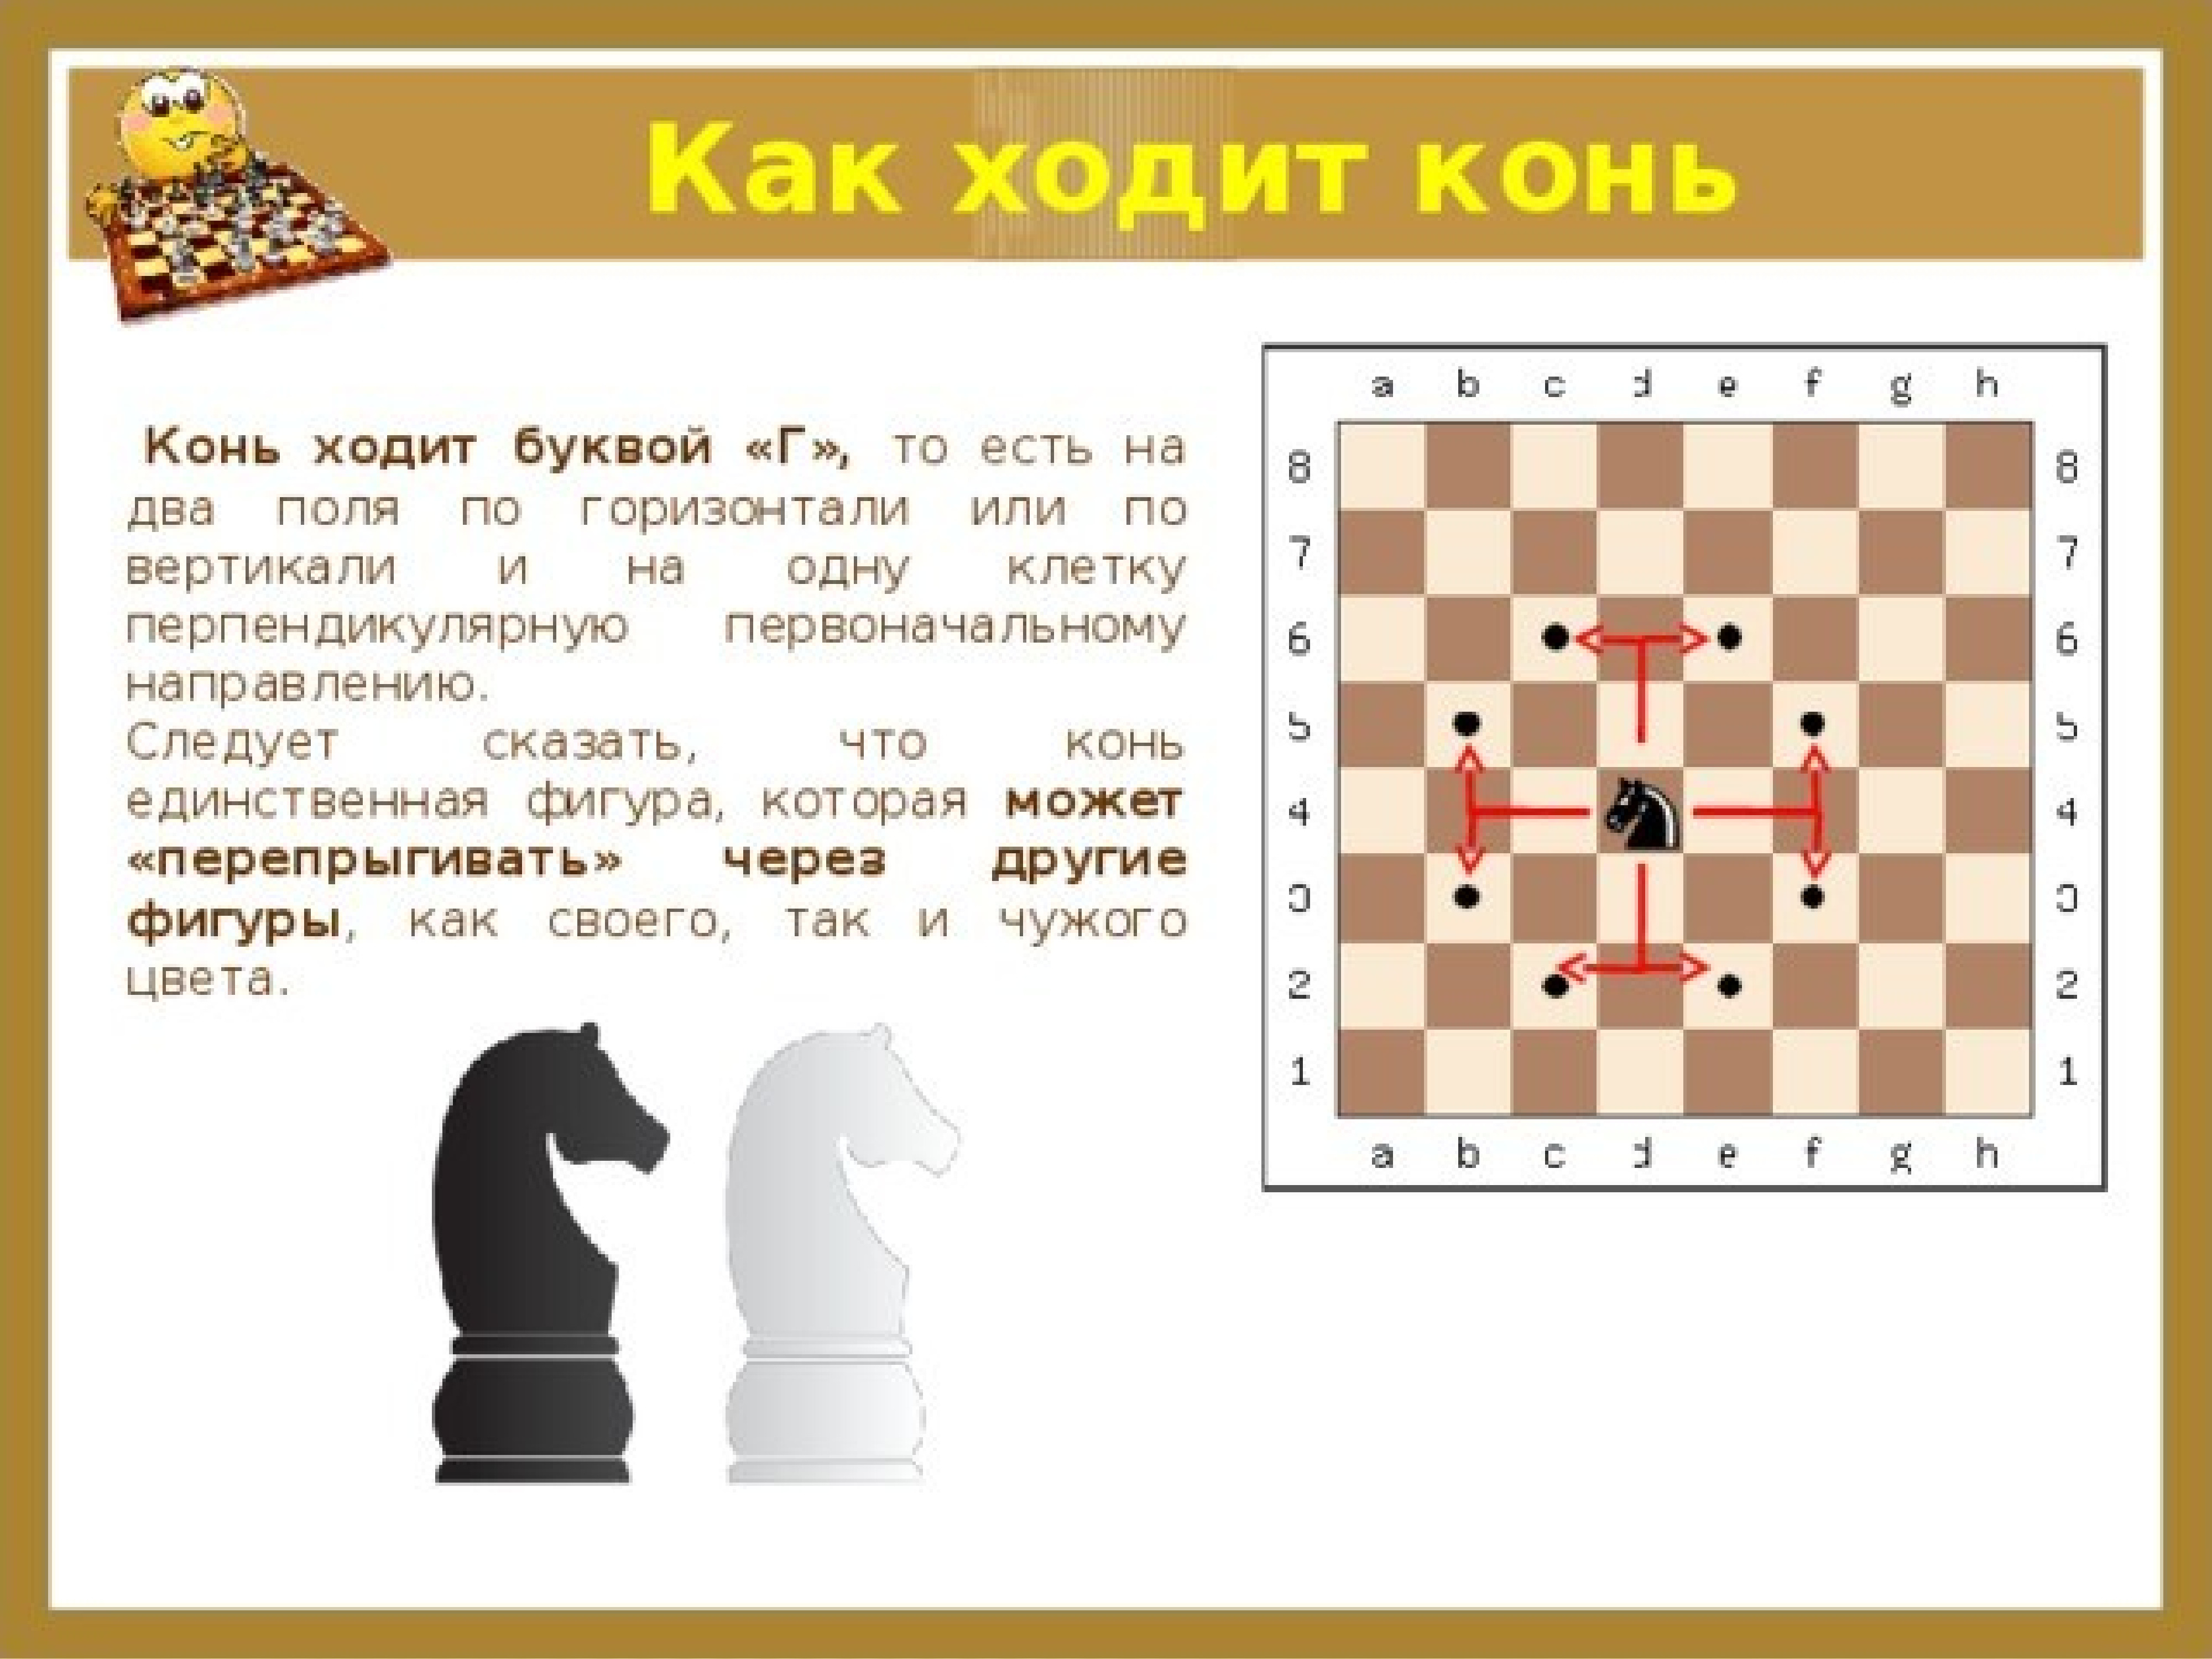 Можно в шахматах есть назад. Как ходит конь в шахматах правила. Как ходит Коконь в шахматах. Как холит коеь в шахмаиах. Как ходит конь в Шах атаз.